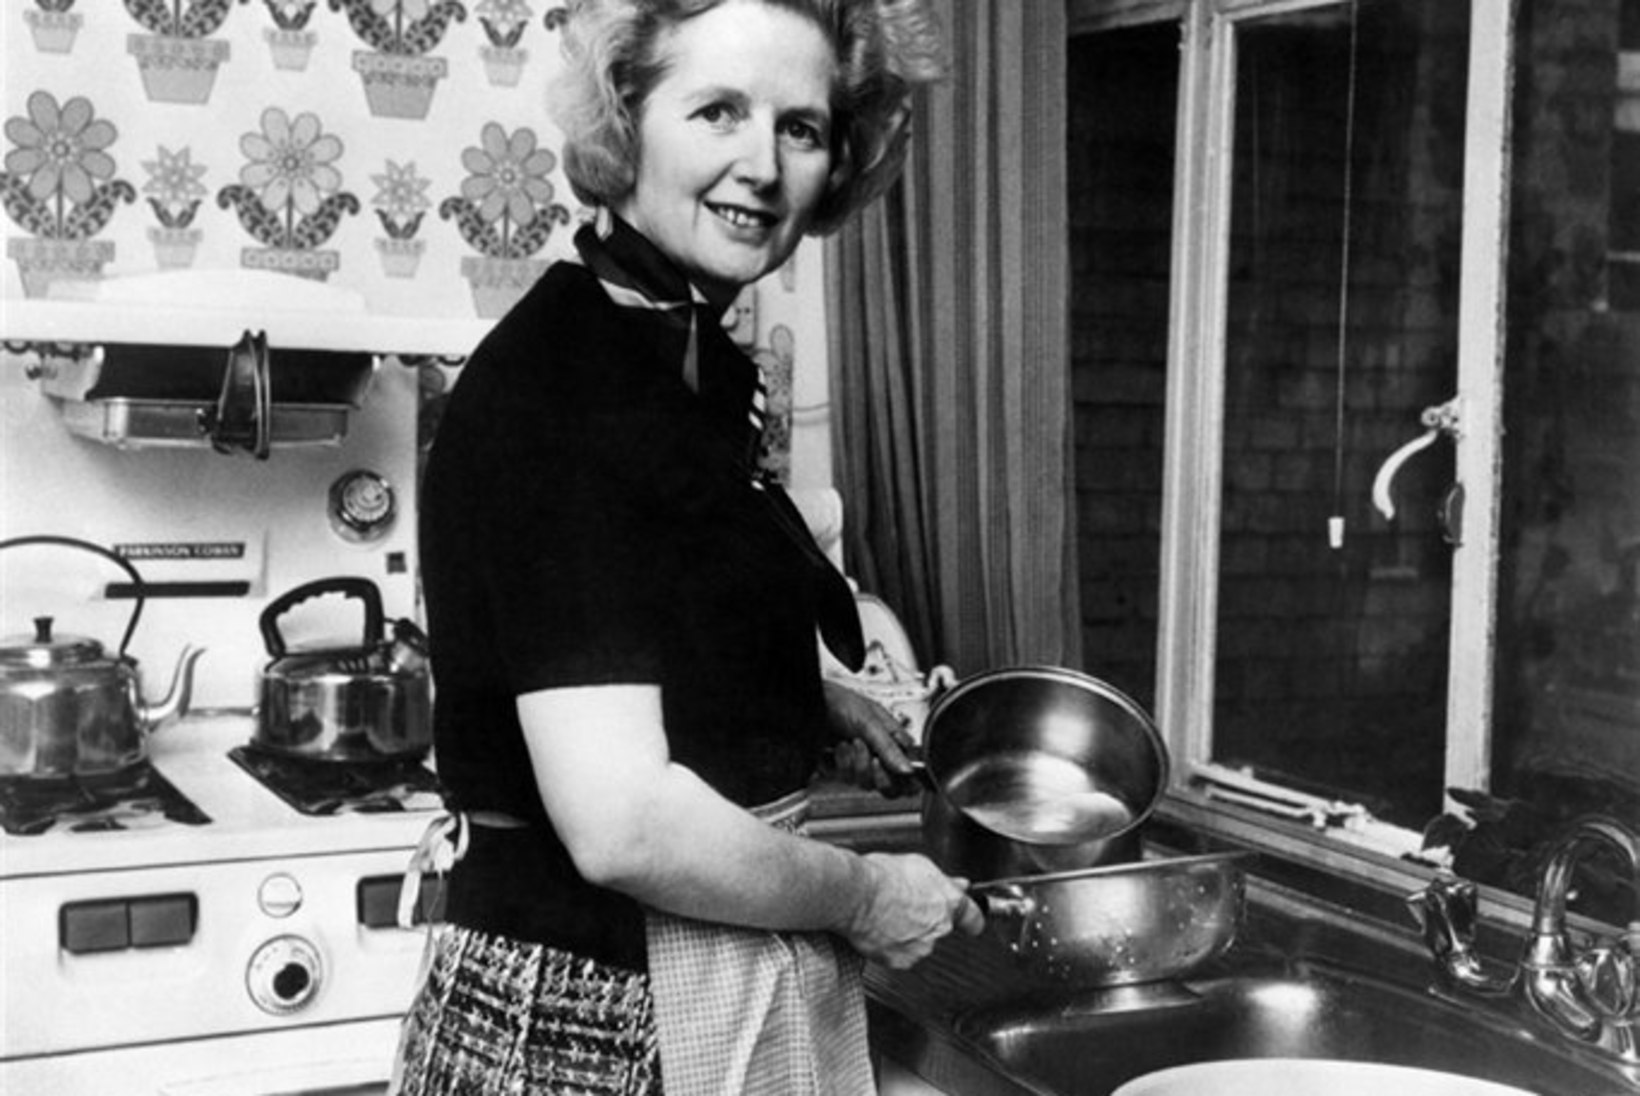 "Thatcheril oli rohkem mune kui enamikul tema ajastu meestel."